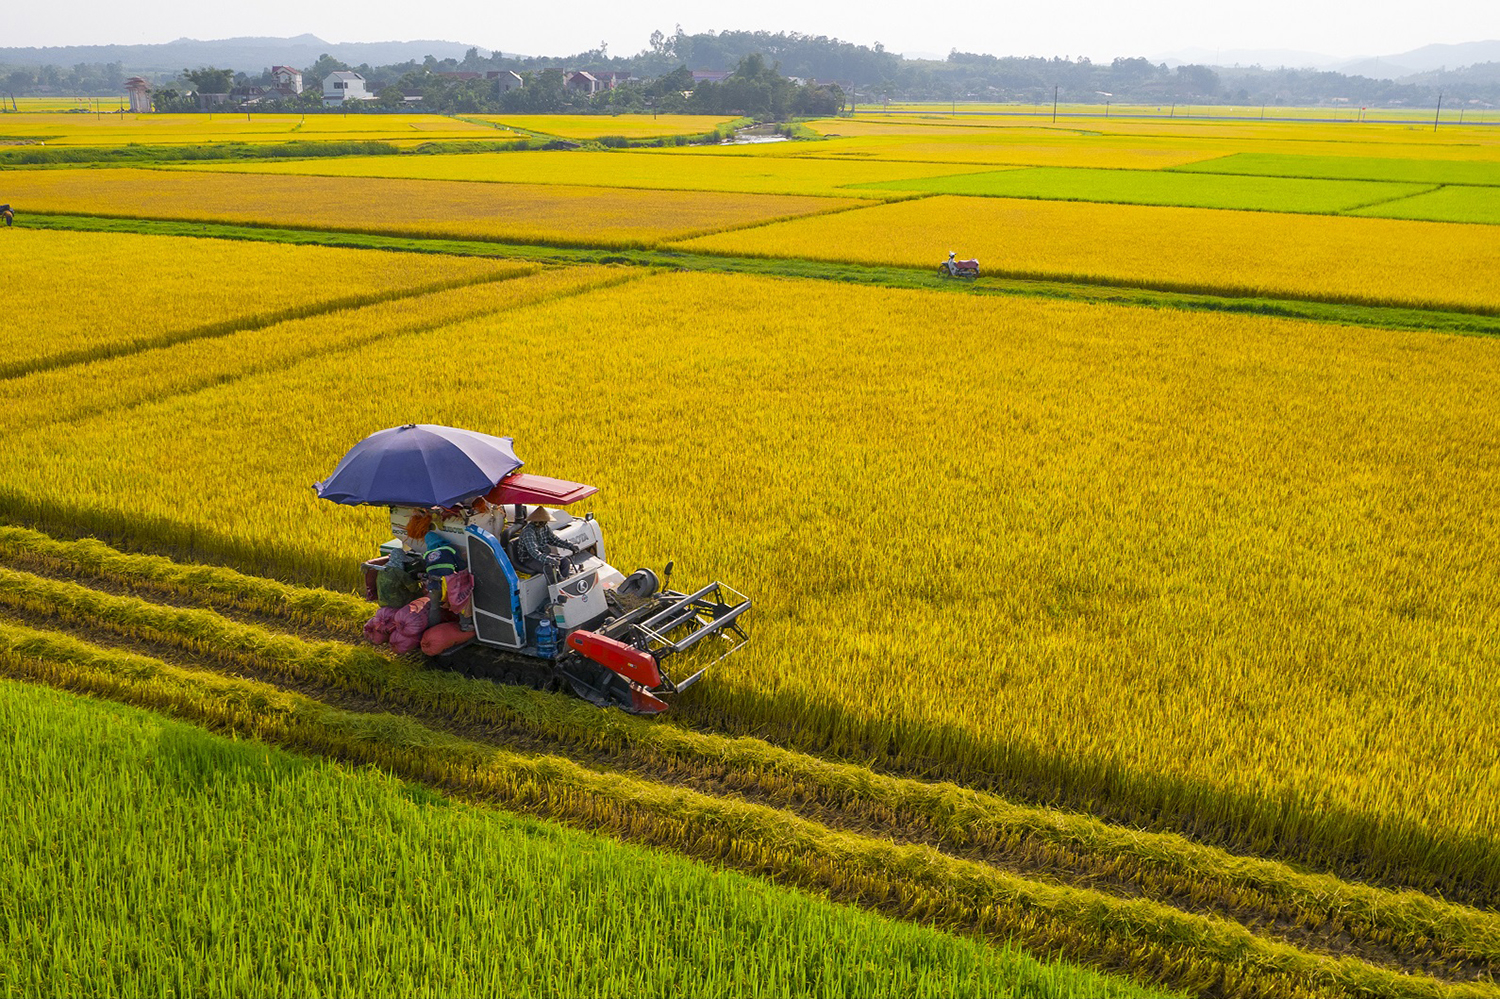 Trong 7 tháng đầu năm, Việt Nam sản xuất hơn 24 triệu tấn lúa, bảo đảm tiêu dùng trong nước và xuất khẩu trên 4,8 triệu tấn gạo với kim ngạch 2,6 tỷ USD, tăng 18,7% về lượng và tăng 29,6% về trị giá. Ảnh: Phạm Văn Thức.